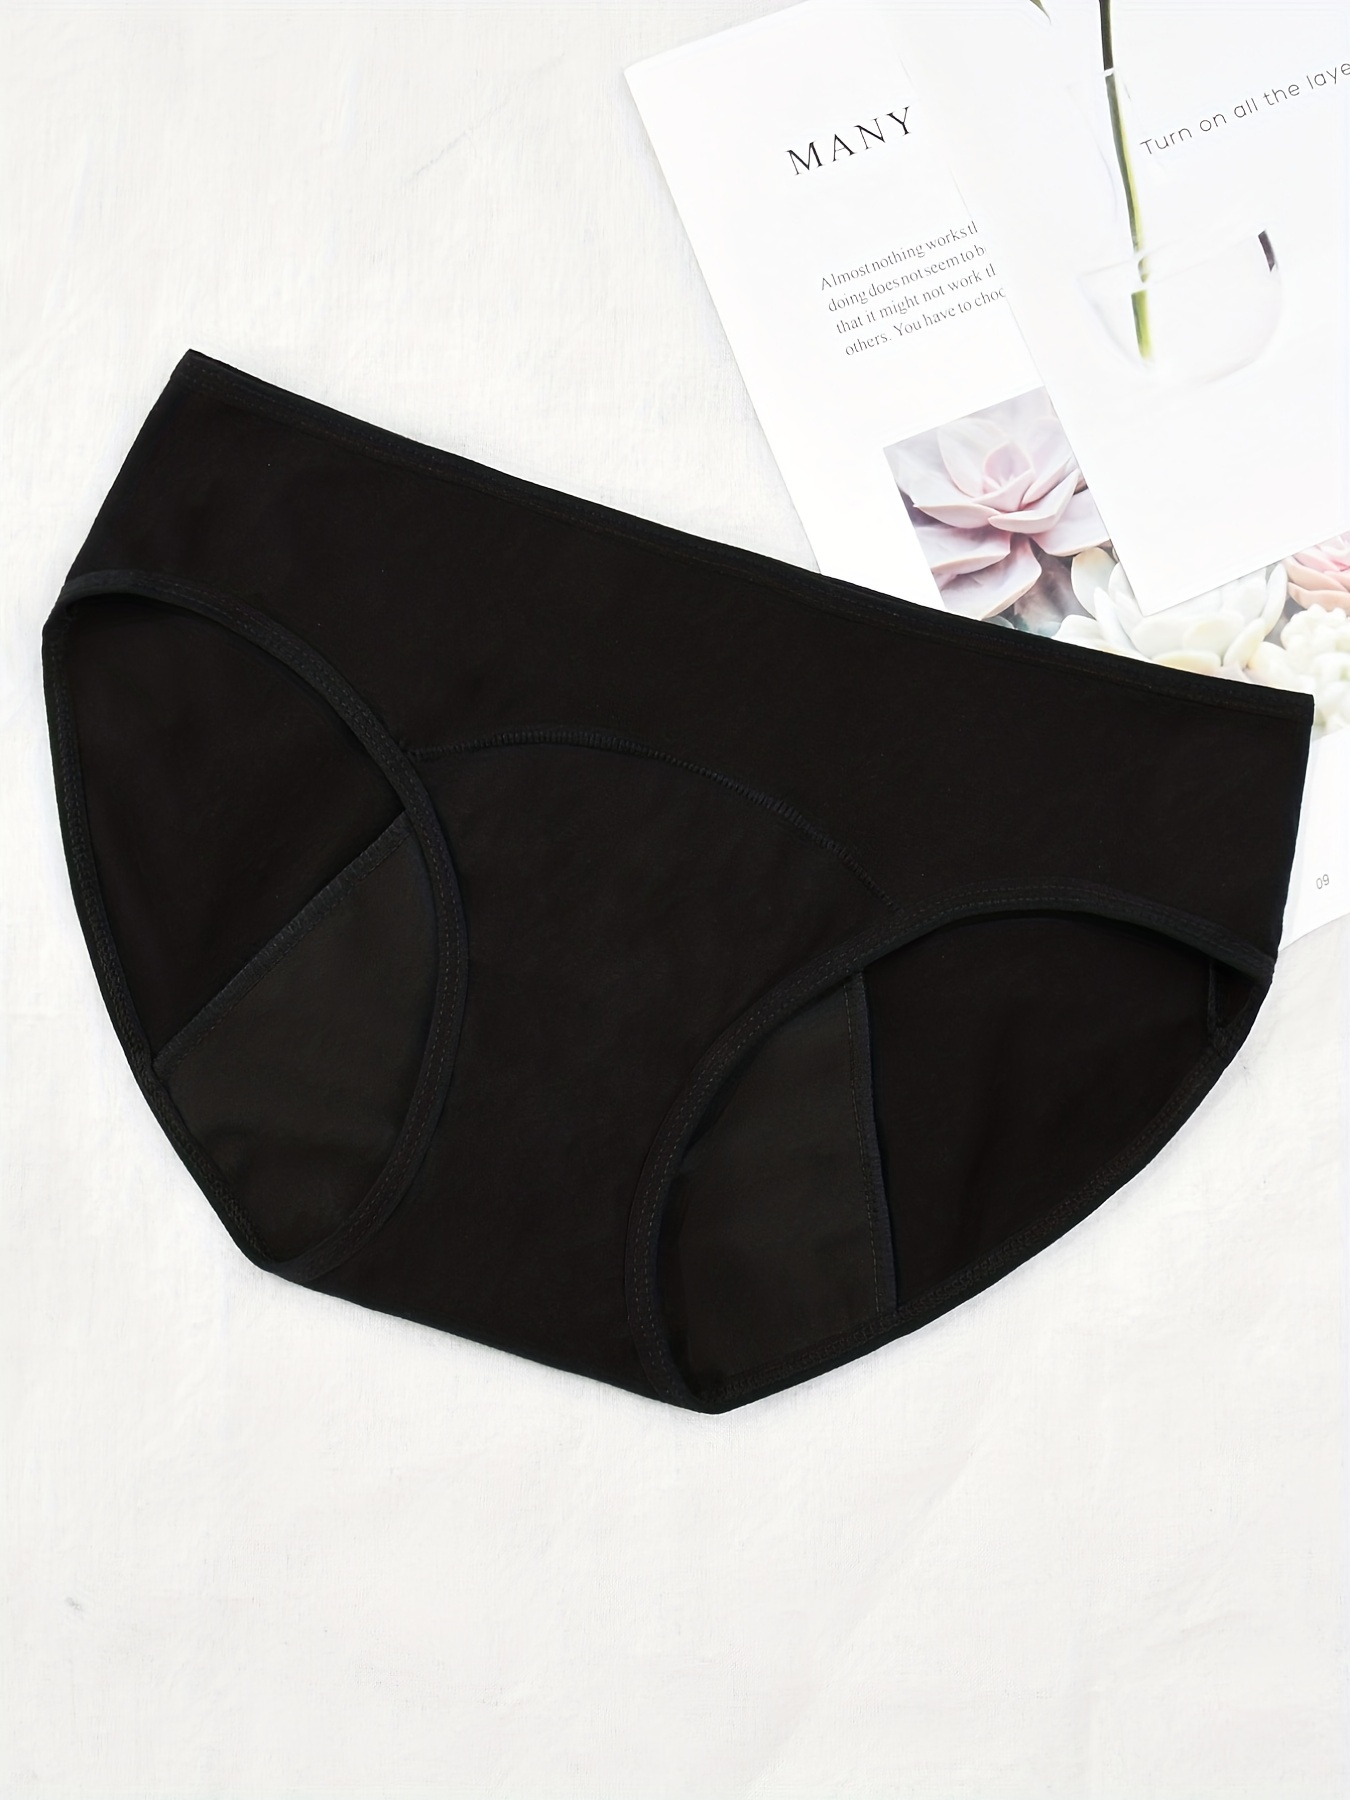 Hipster Postpartum Underwear – Archway Boutique